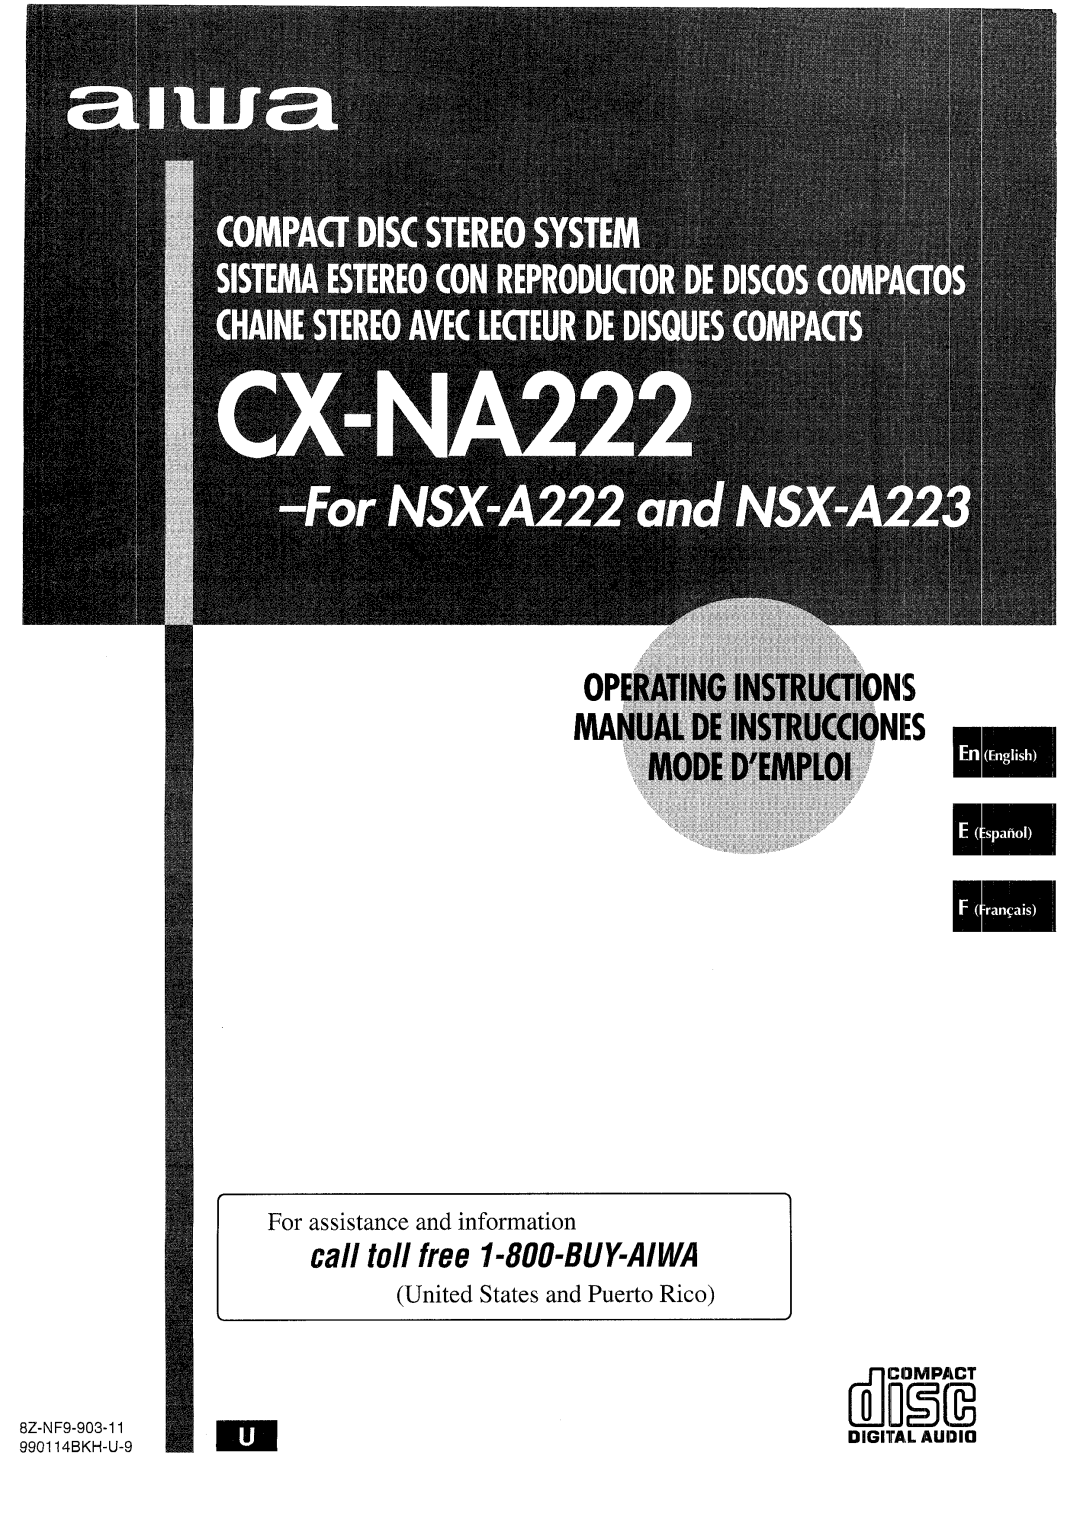 Aiwa CX-NA222 manual IilI!i3E 